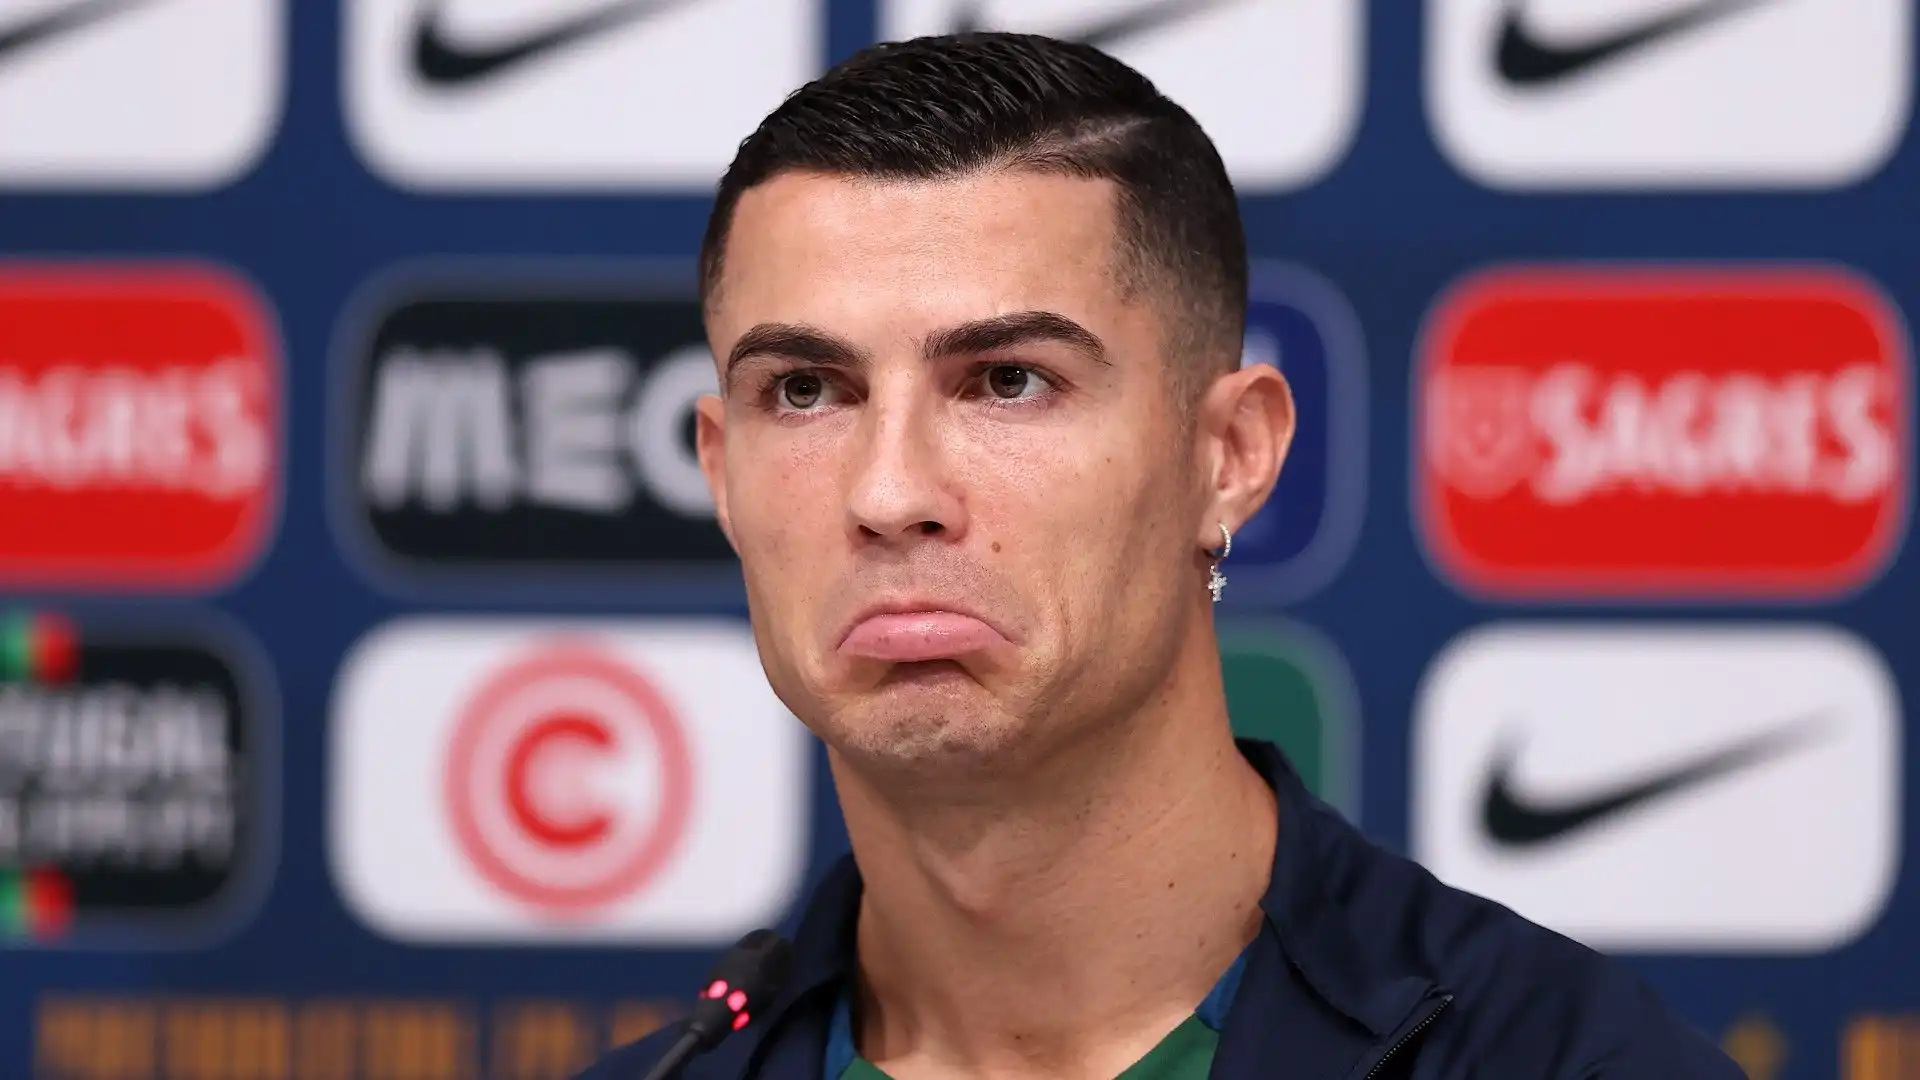 Cristiano Ronaldo polemico in conferenza stampa: le foto